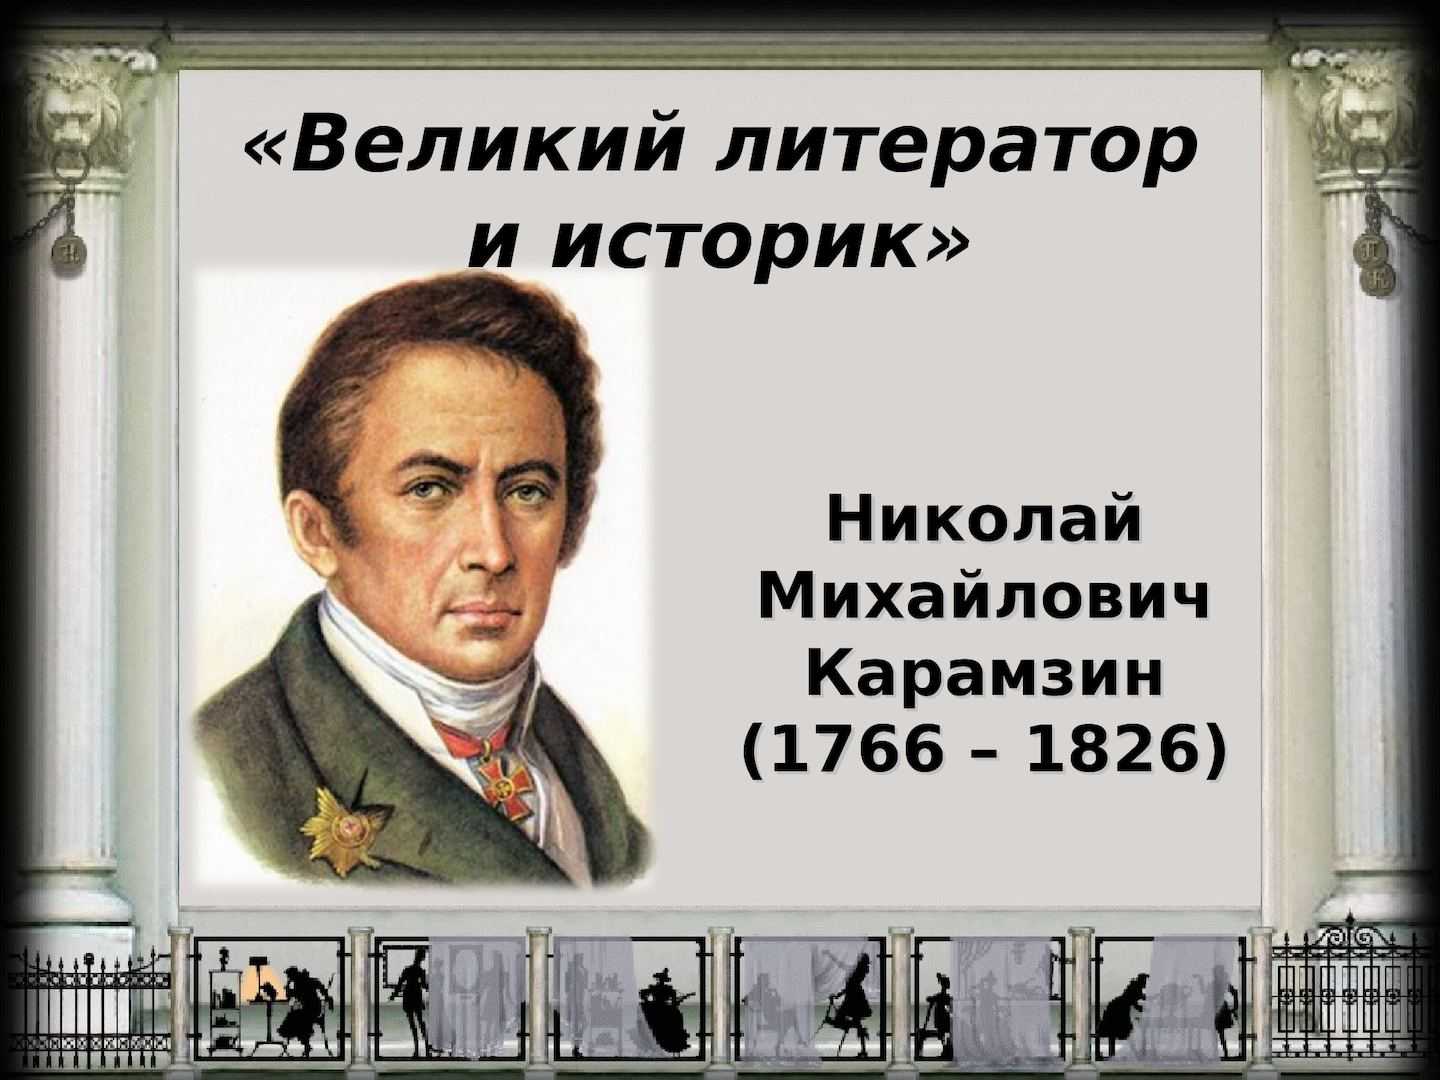 Николай михайлович карамзин